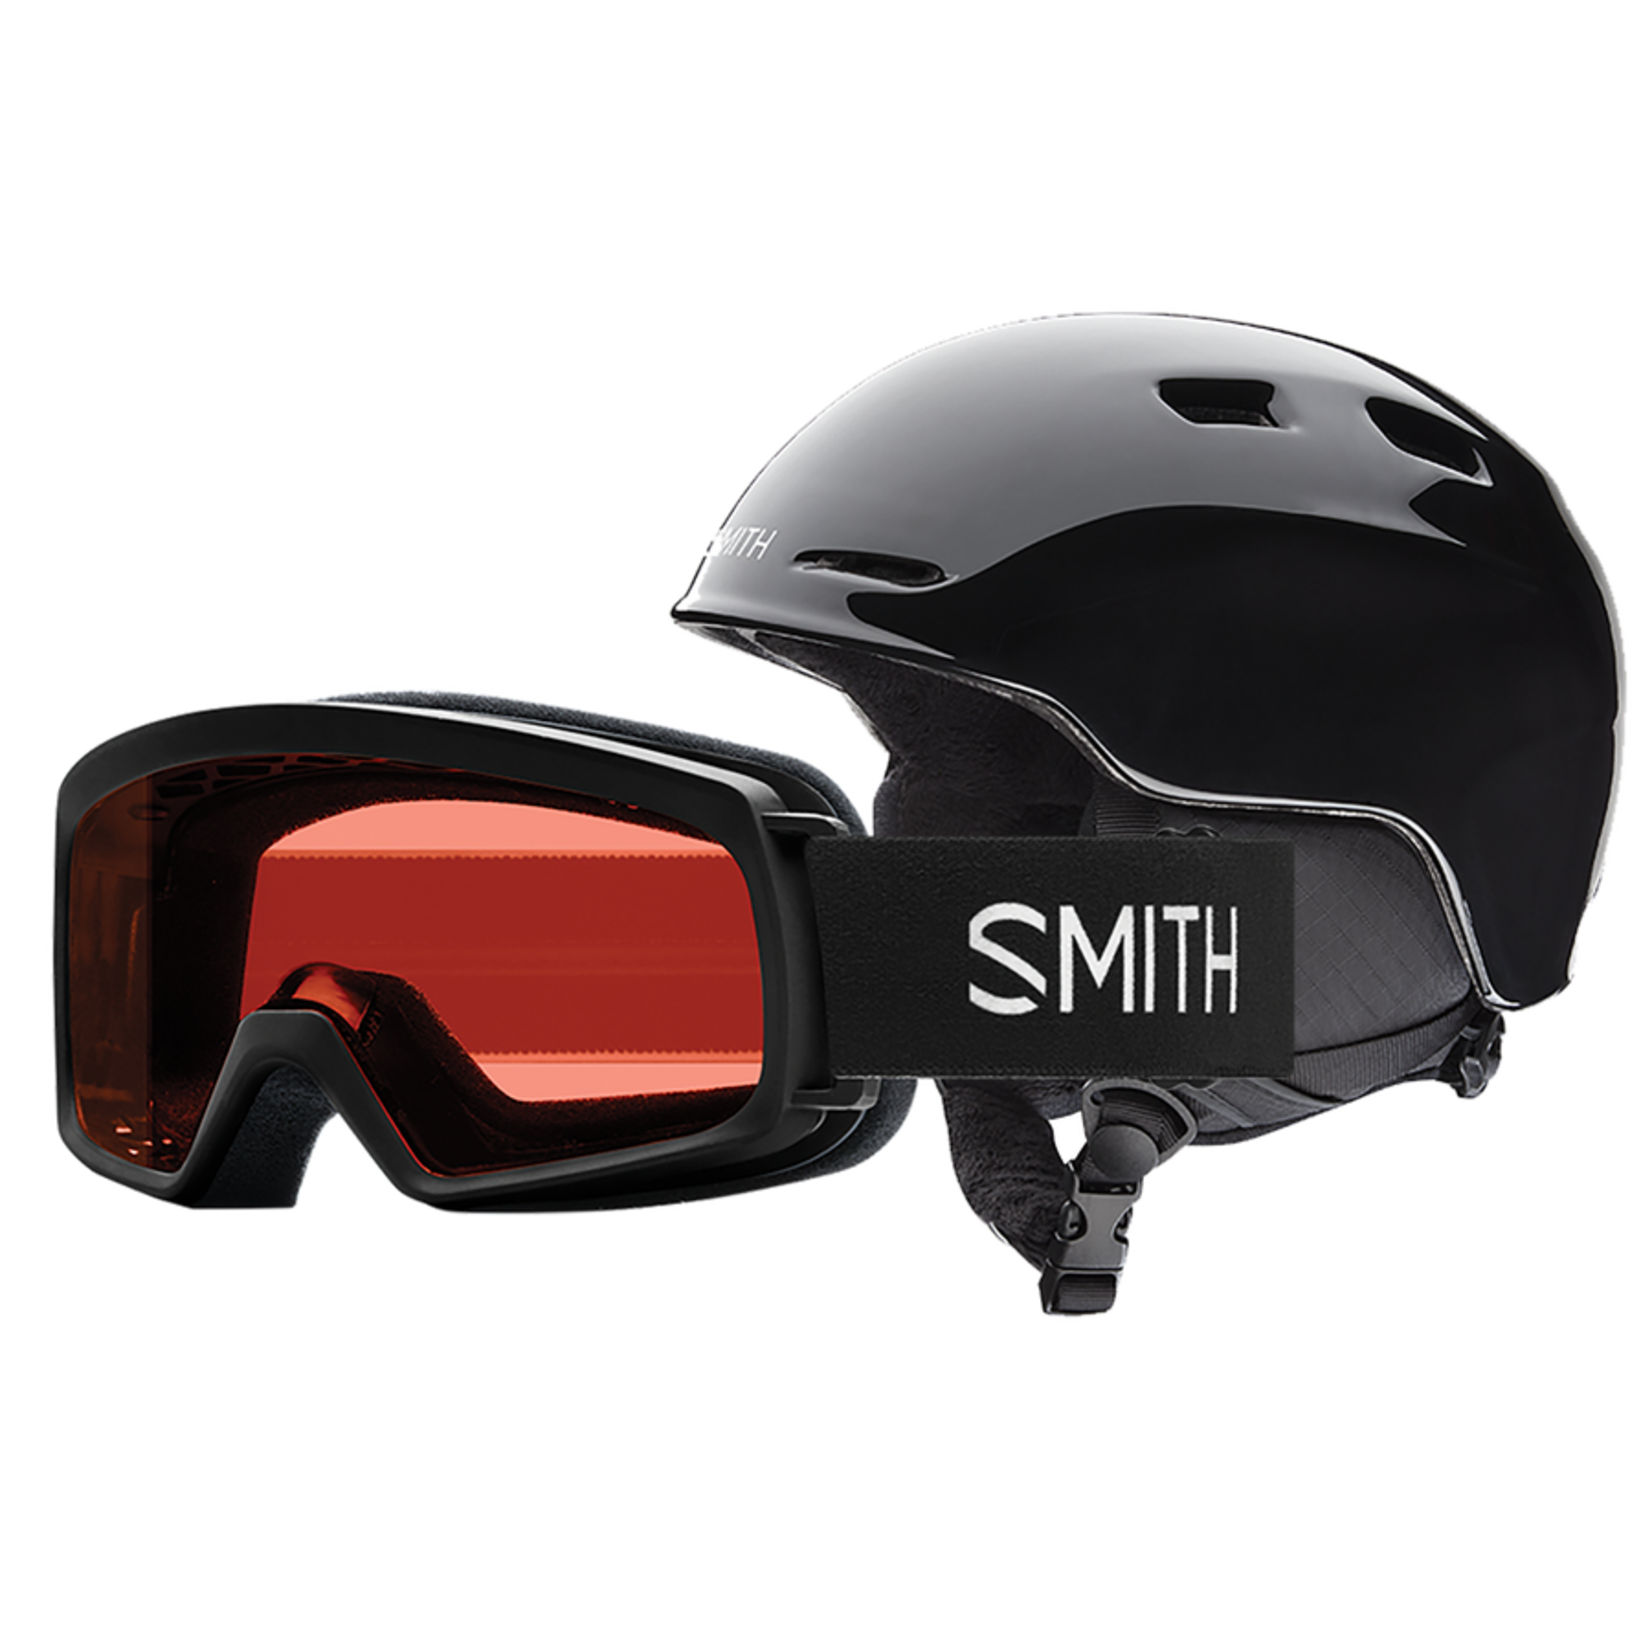 Smith Optics SMITH Zoom rascal combo casque et lunette de ski pour enfant